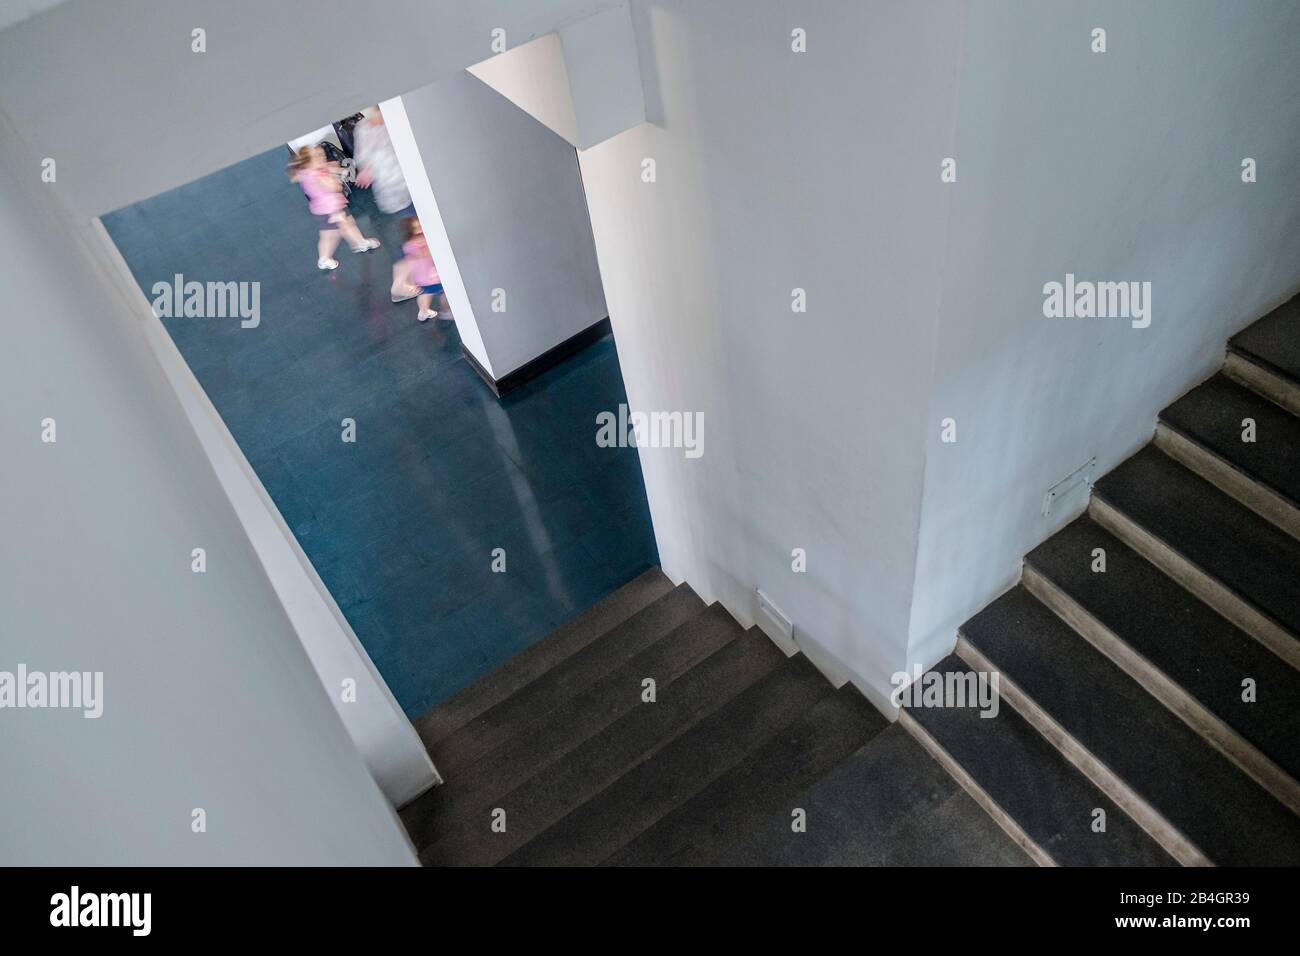 Arquitectura, bajando una escalera en un pasillo, gente borrosa pasando por allí Foto de stock